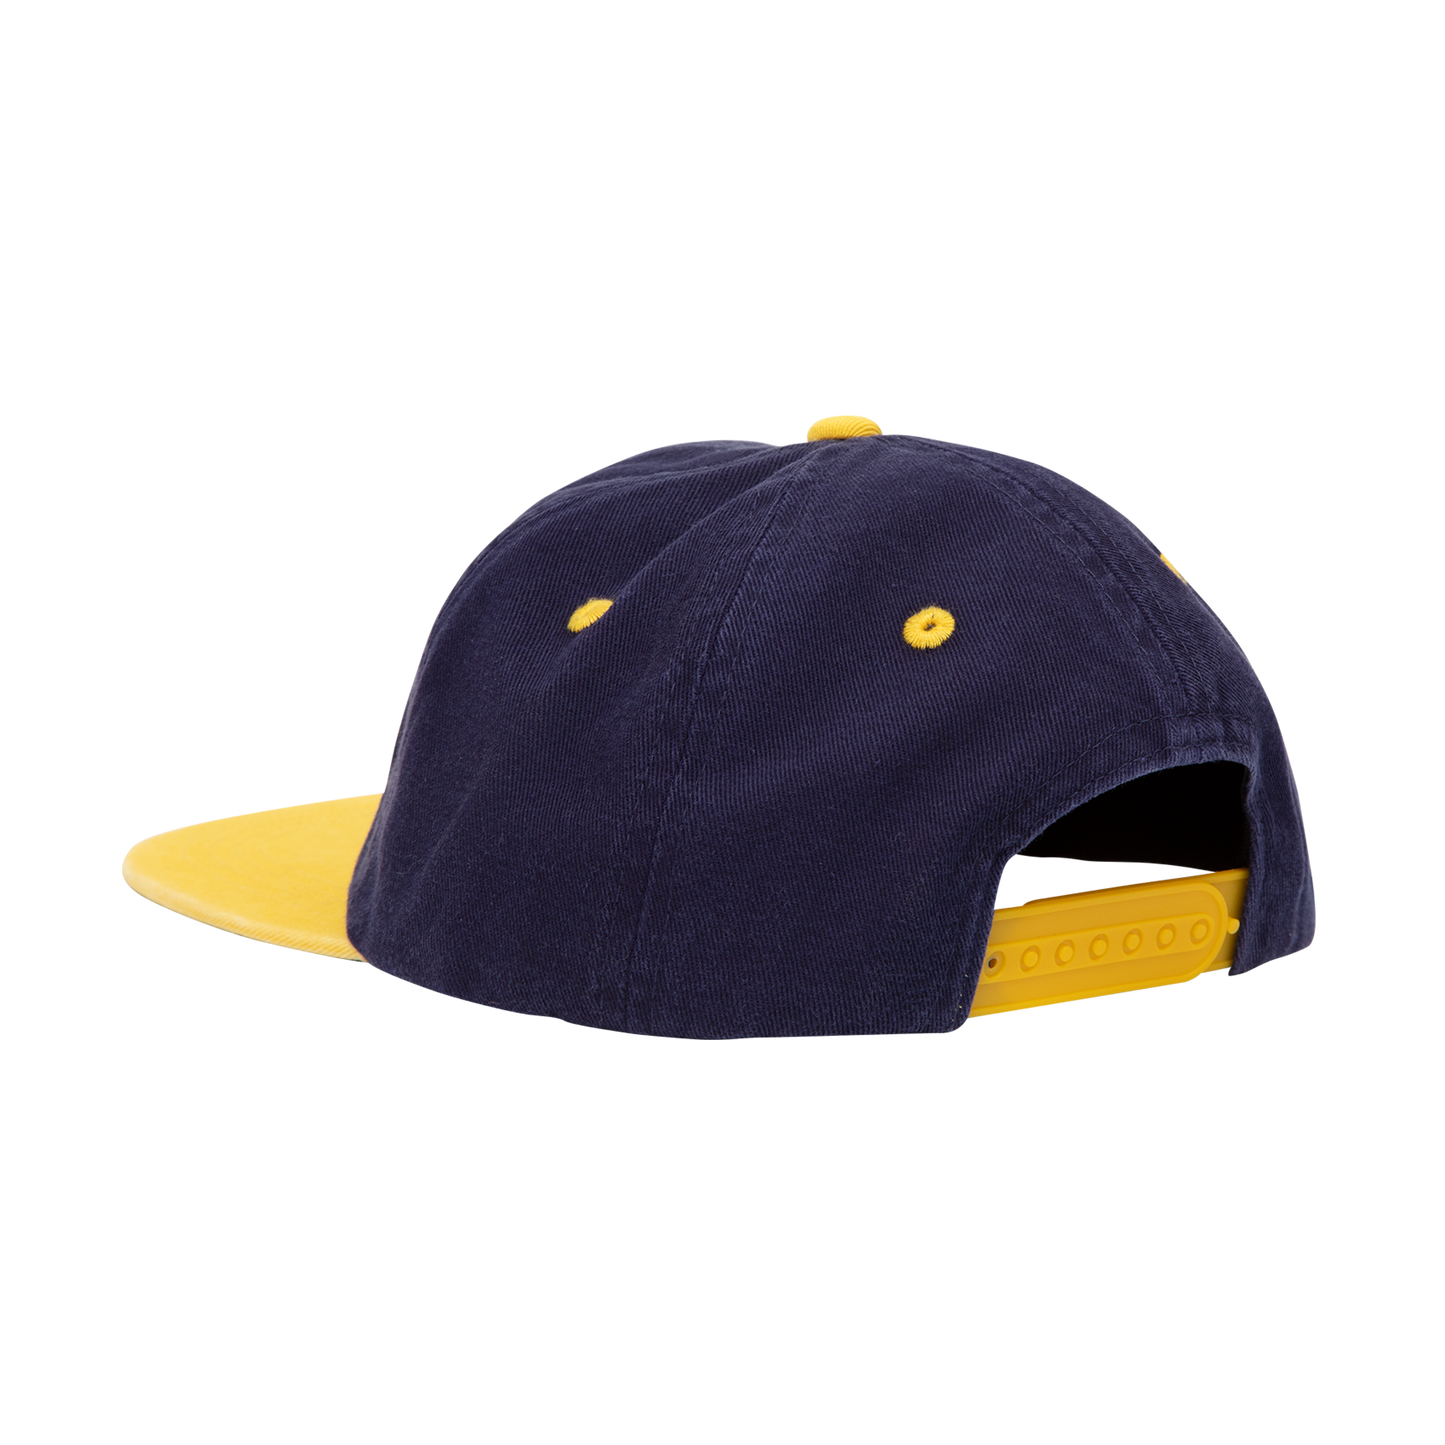 School of Business Hat, Navy/Yellow